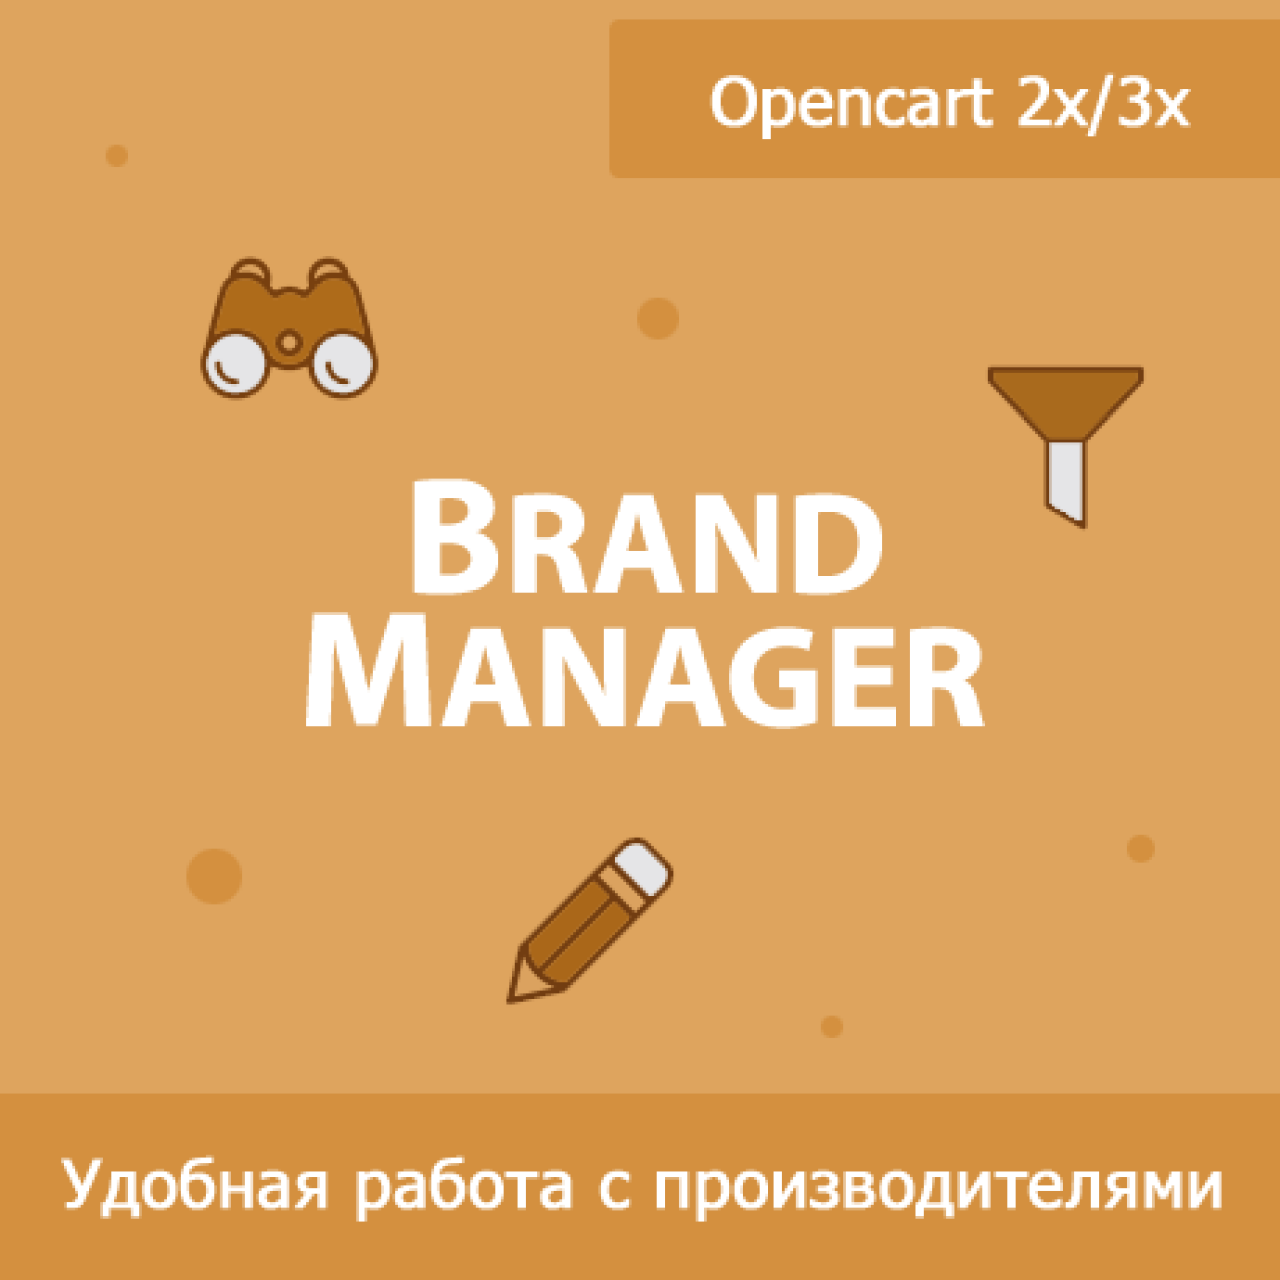 Brand Manager - управление производителями из категории Админка для CMS OpenCart (ОпенКарт)